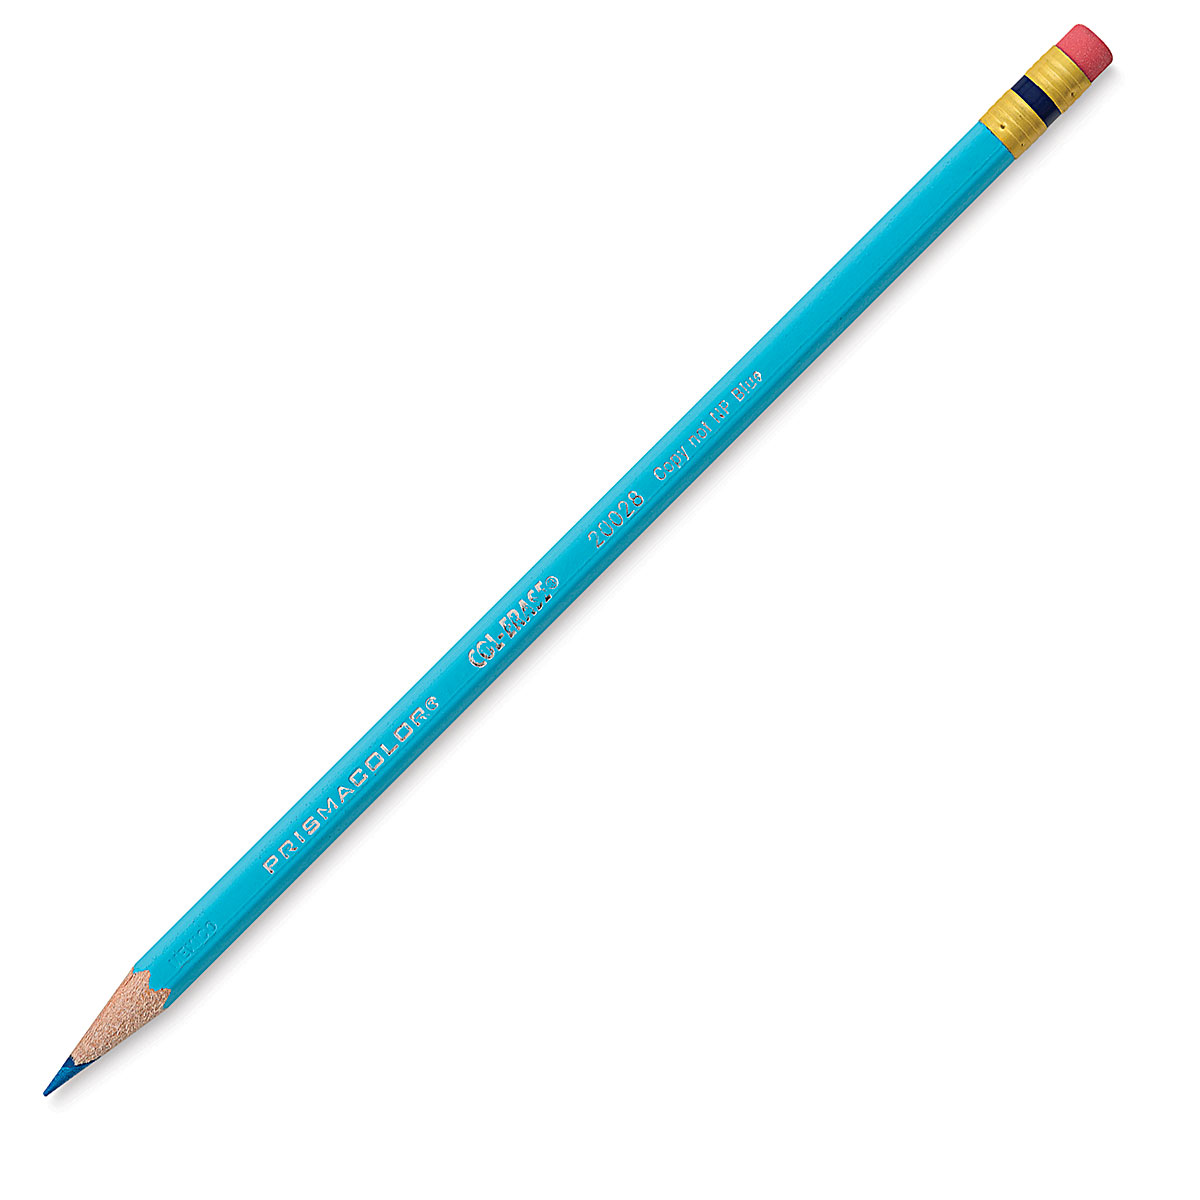 Prismacolor col-erase review & comparison erasable pencil colour